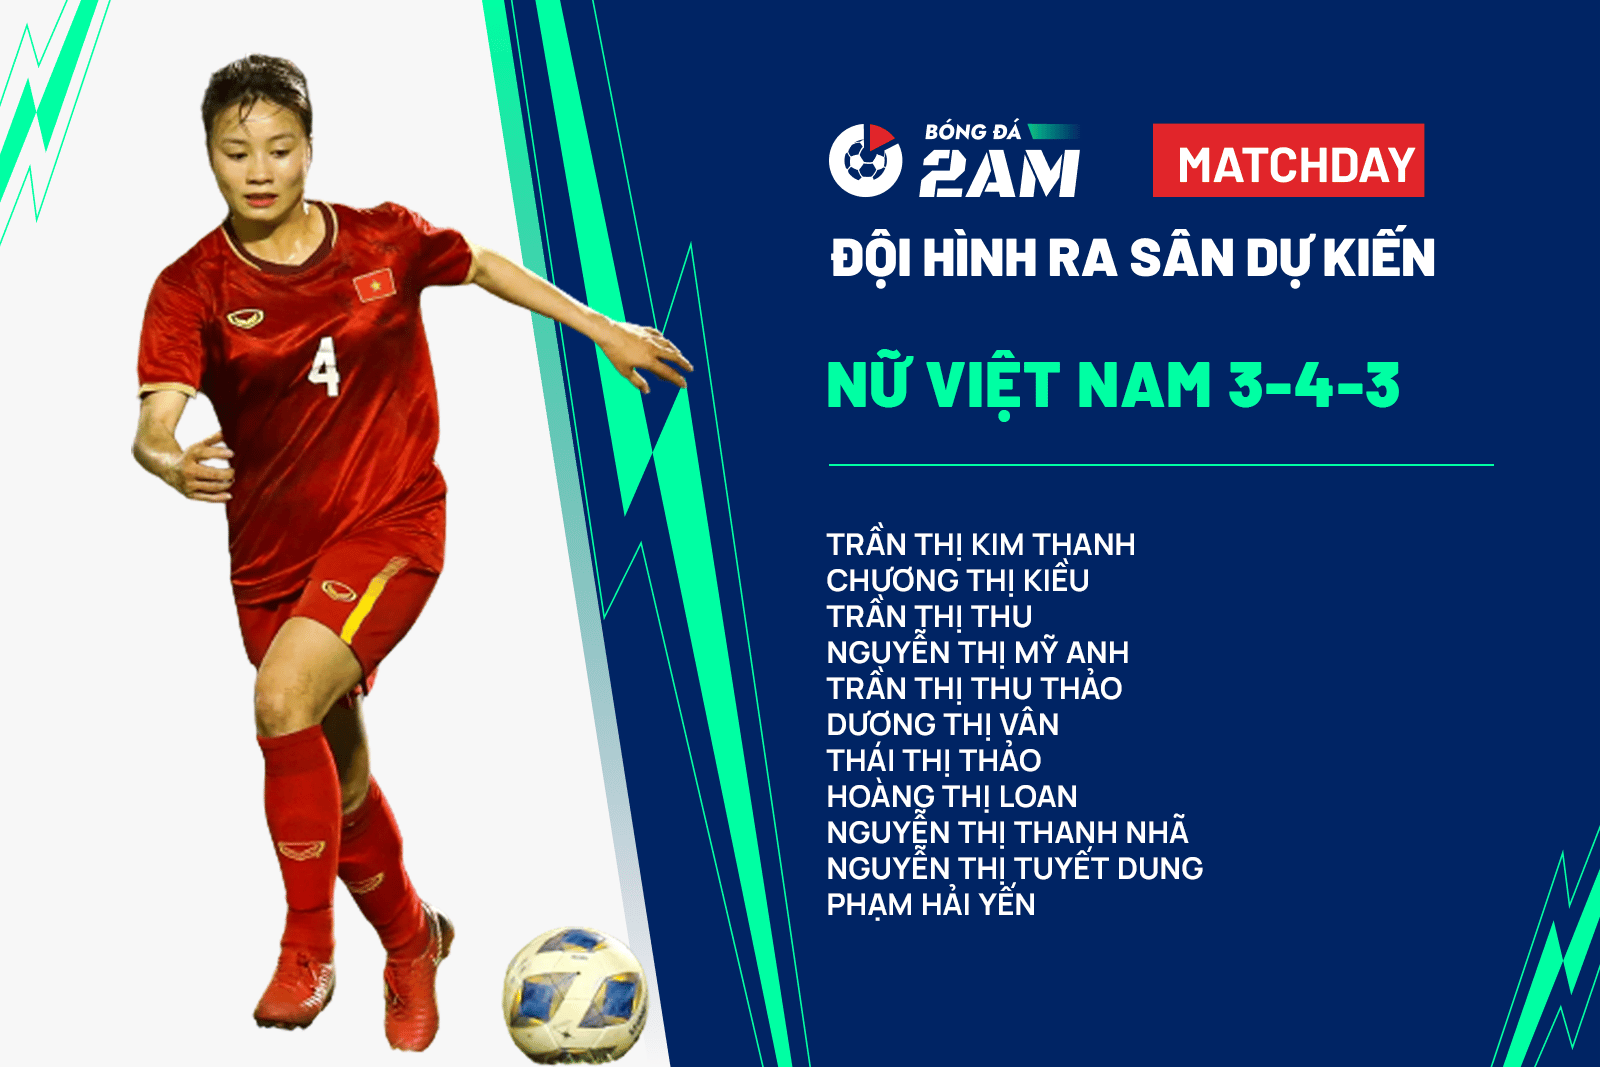 Nữ Việt Nam vs nữ Bangladesh đối đầu